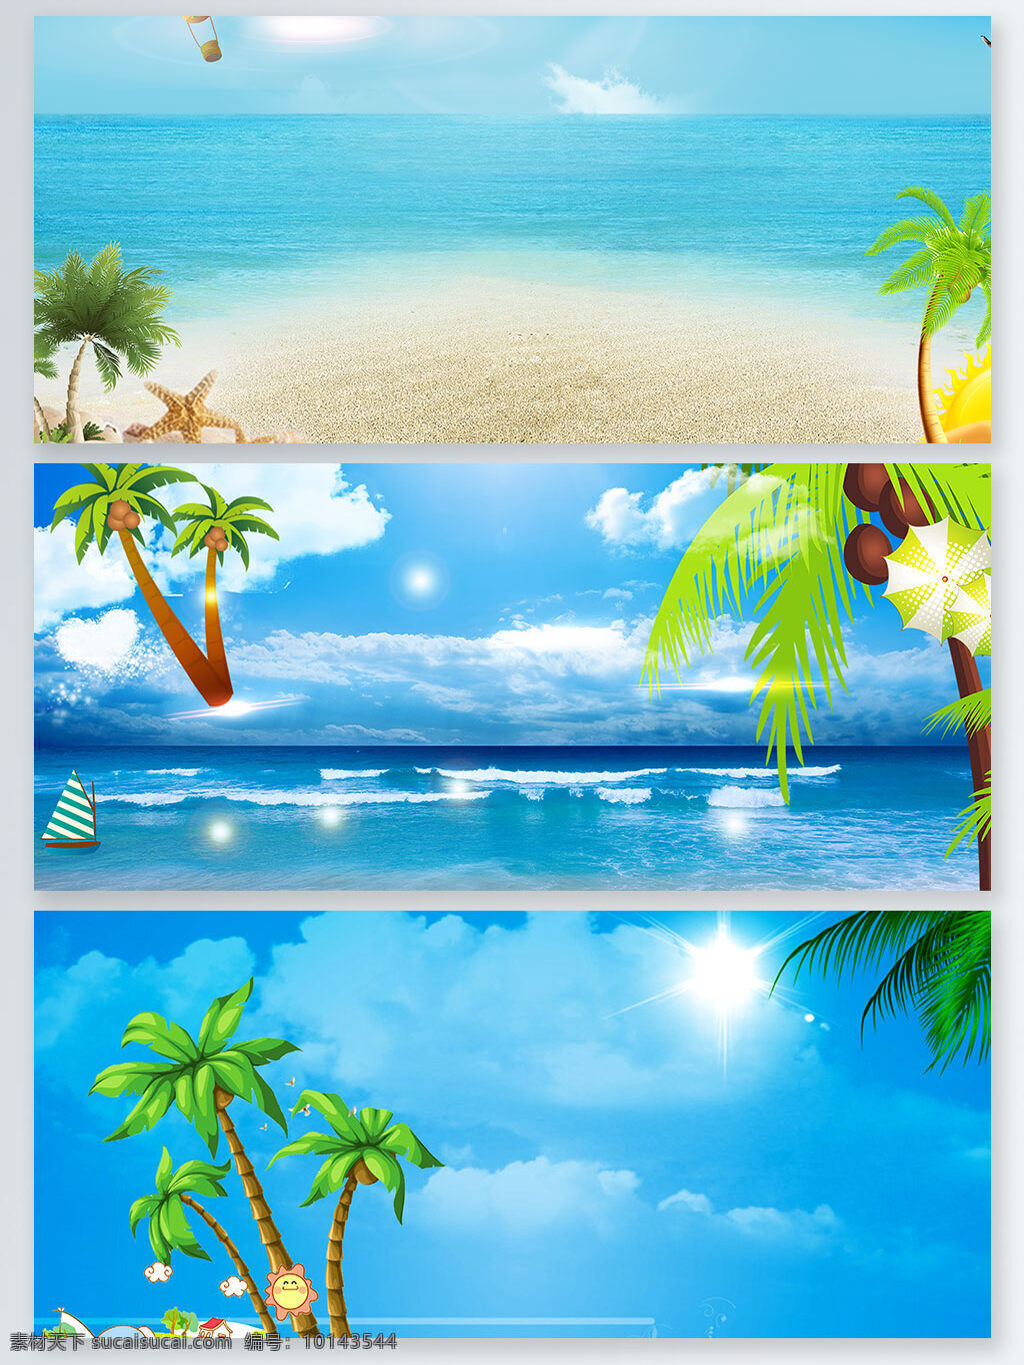 海边 风景 椰子树 蓝天 白云 展板 背景 清新 蓝色 沙滩 海边风景 海报 banner 简约 清凉 夏季